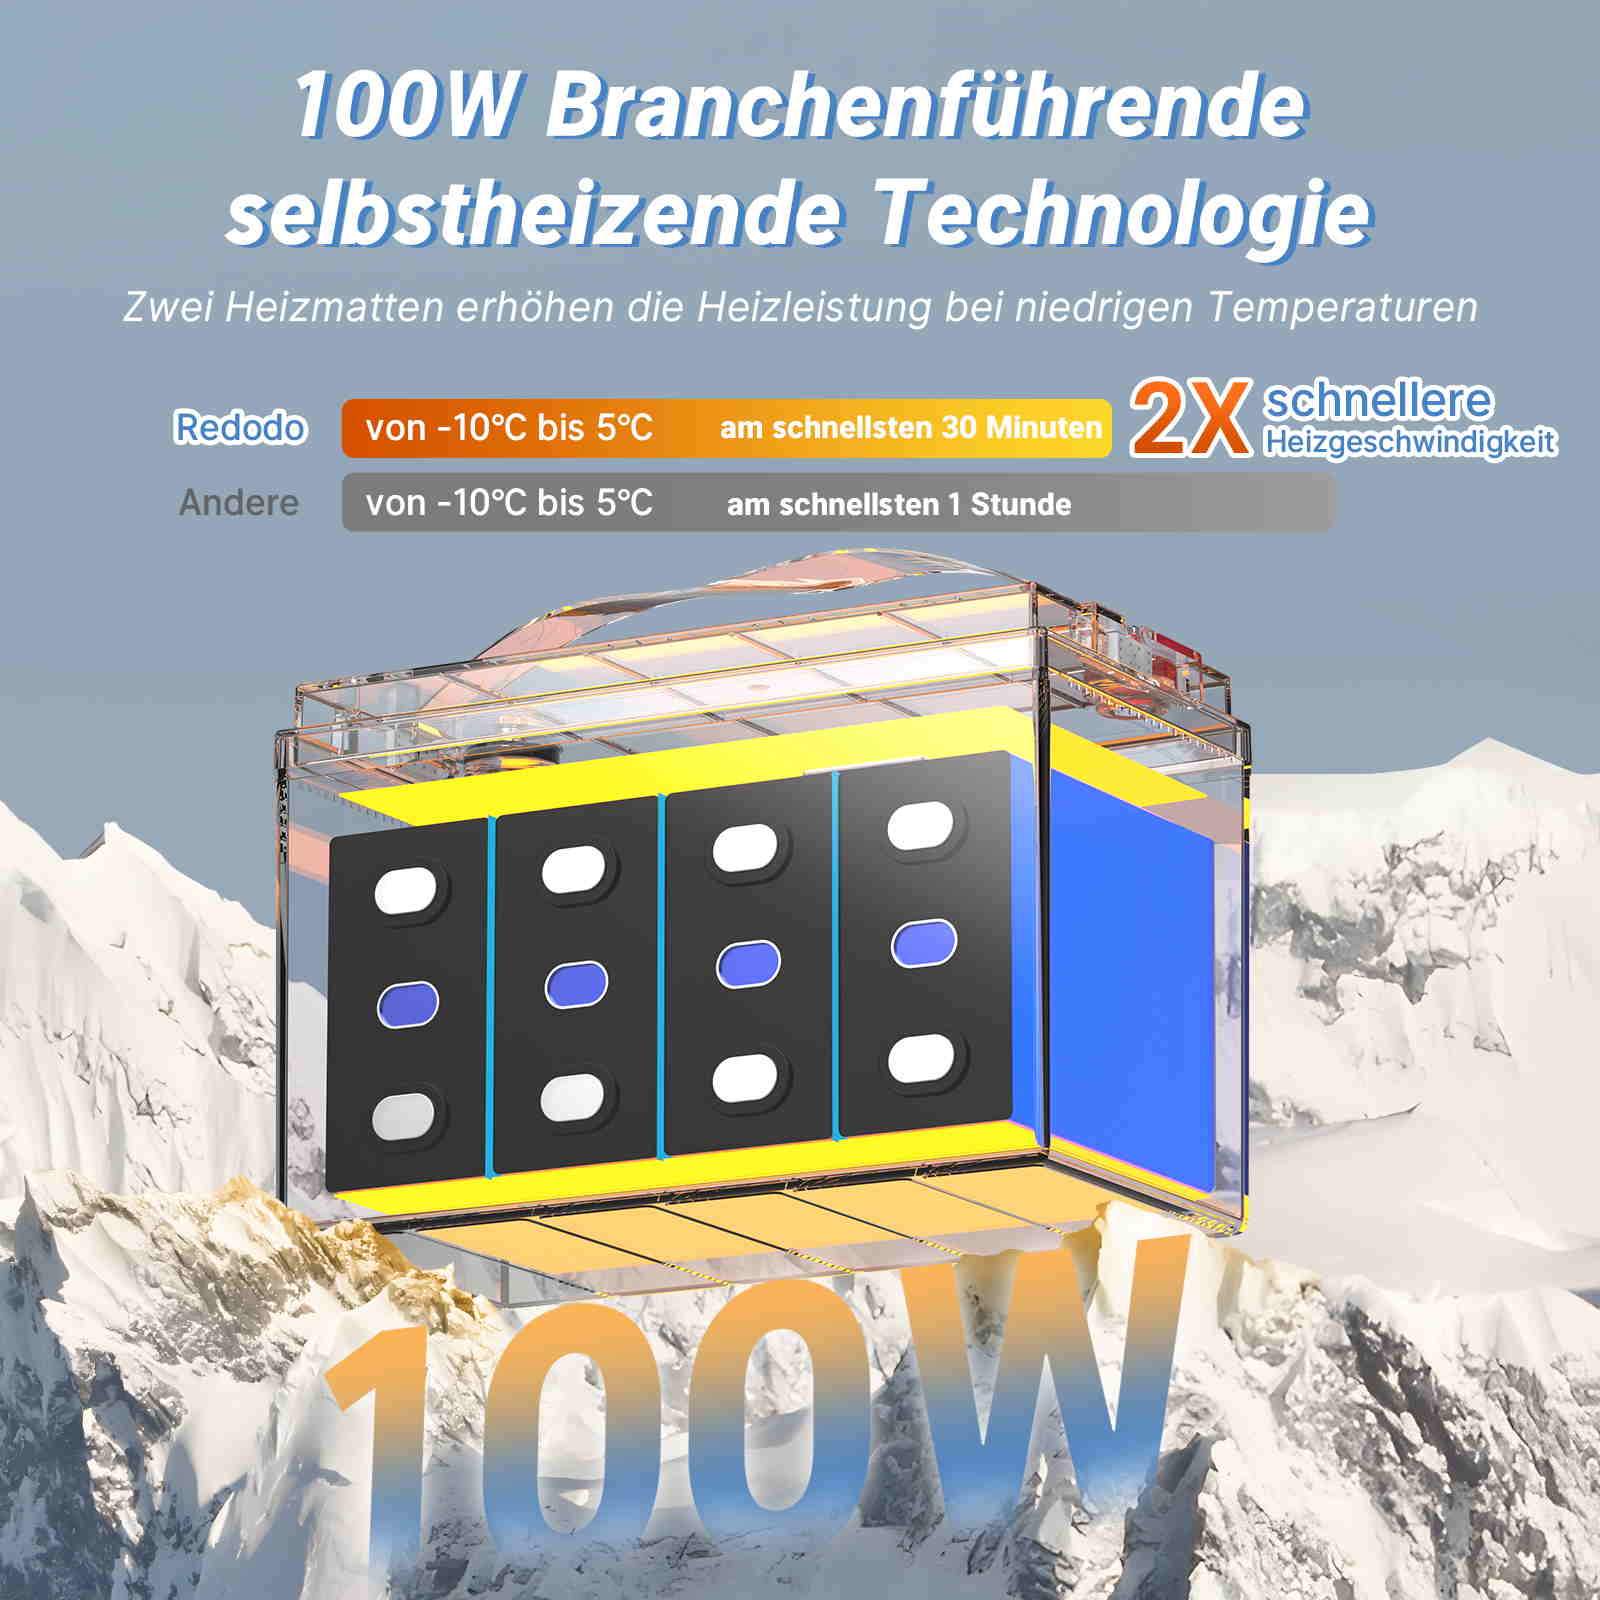 【Nur €268】Befreiung von 19% MwSt - Redodo 12V 100Ah LiFePO4 Batterie mit Selbsterwärmung - nur für Wohngebäude und Deutschland redodopower-de